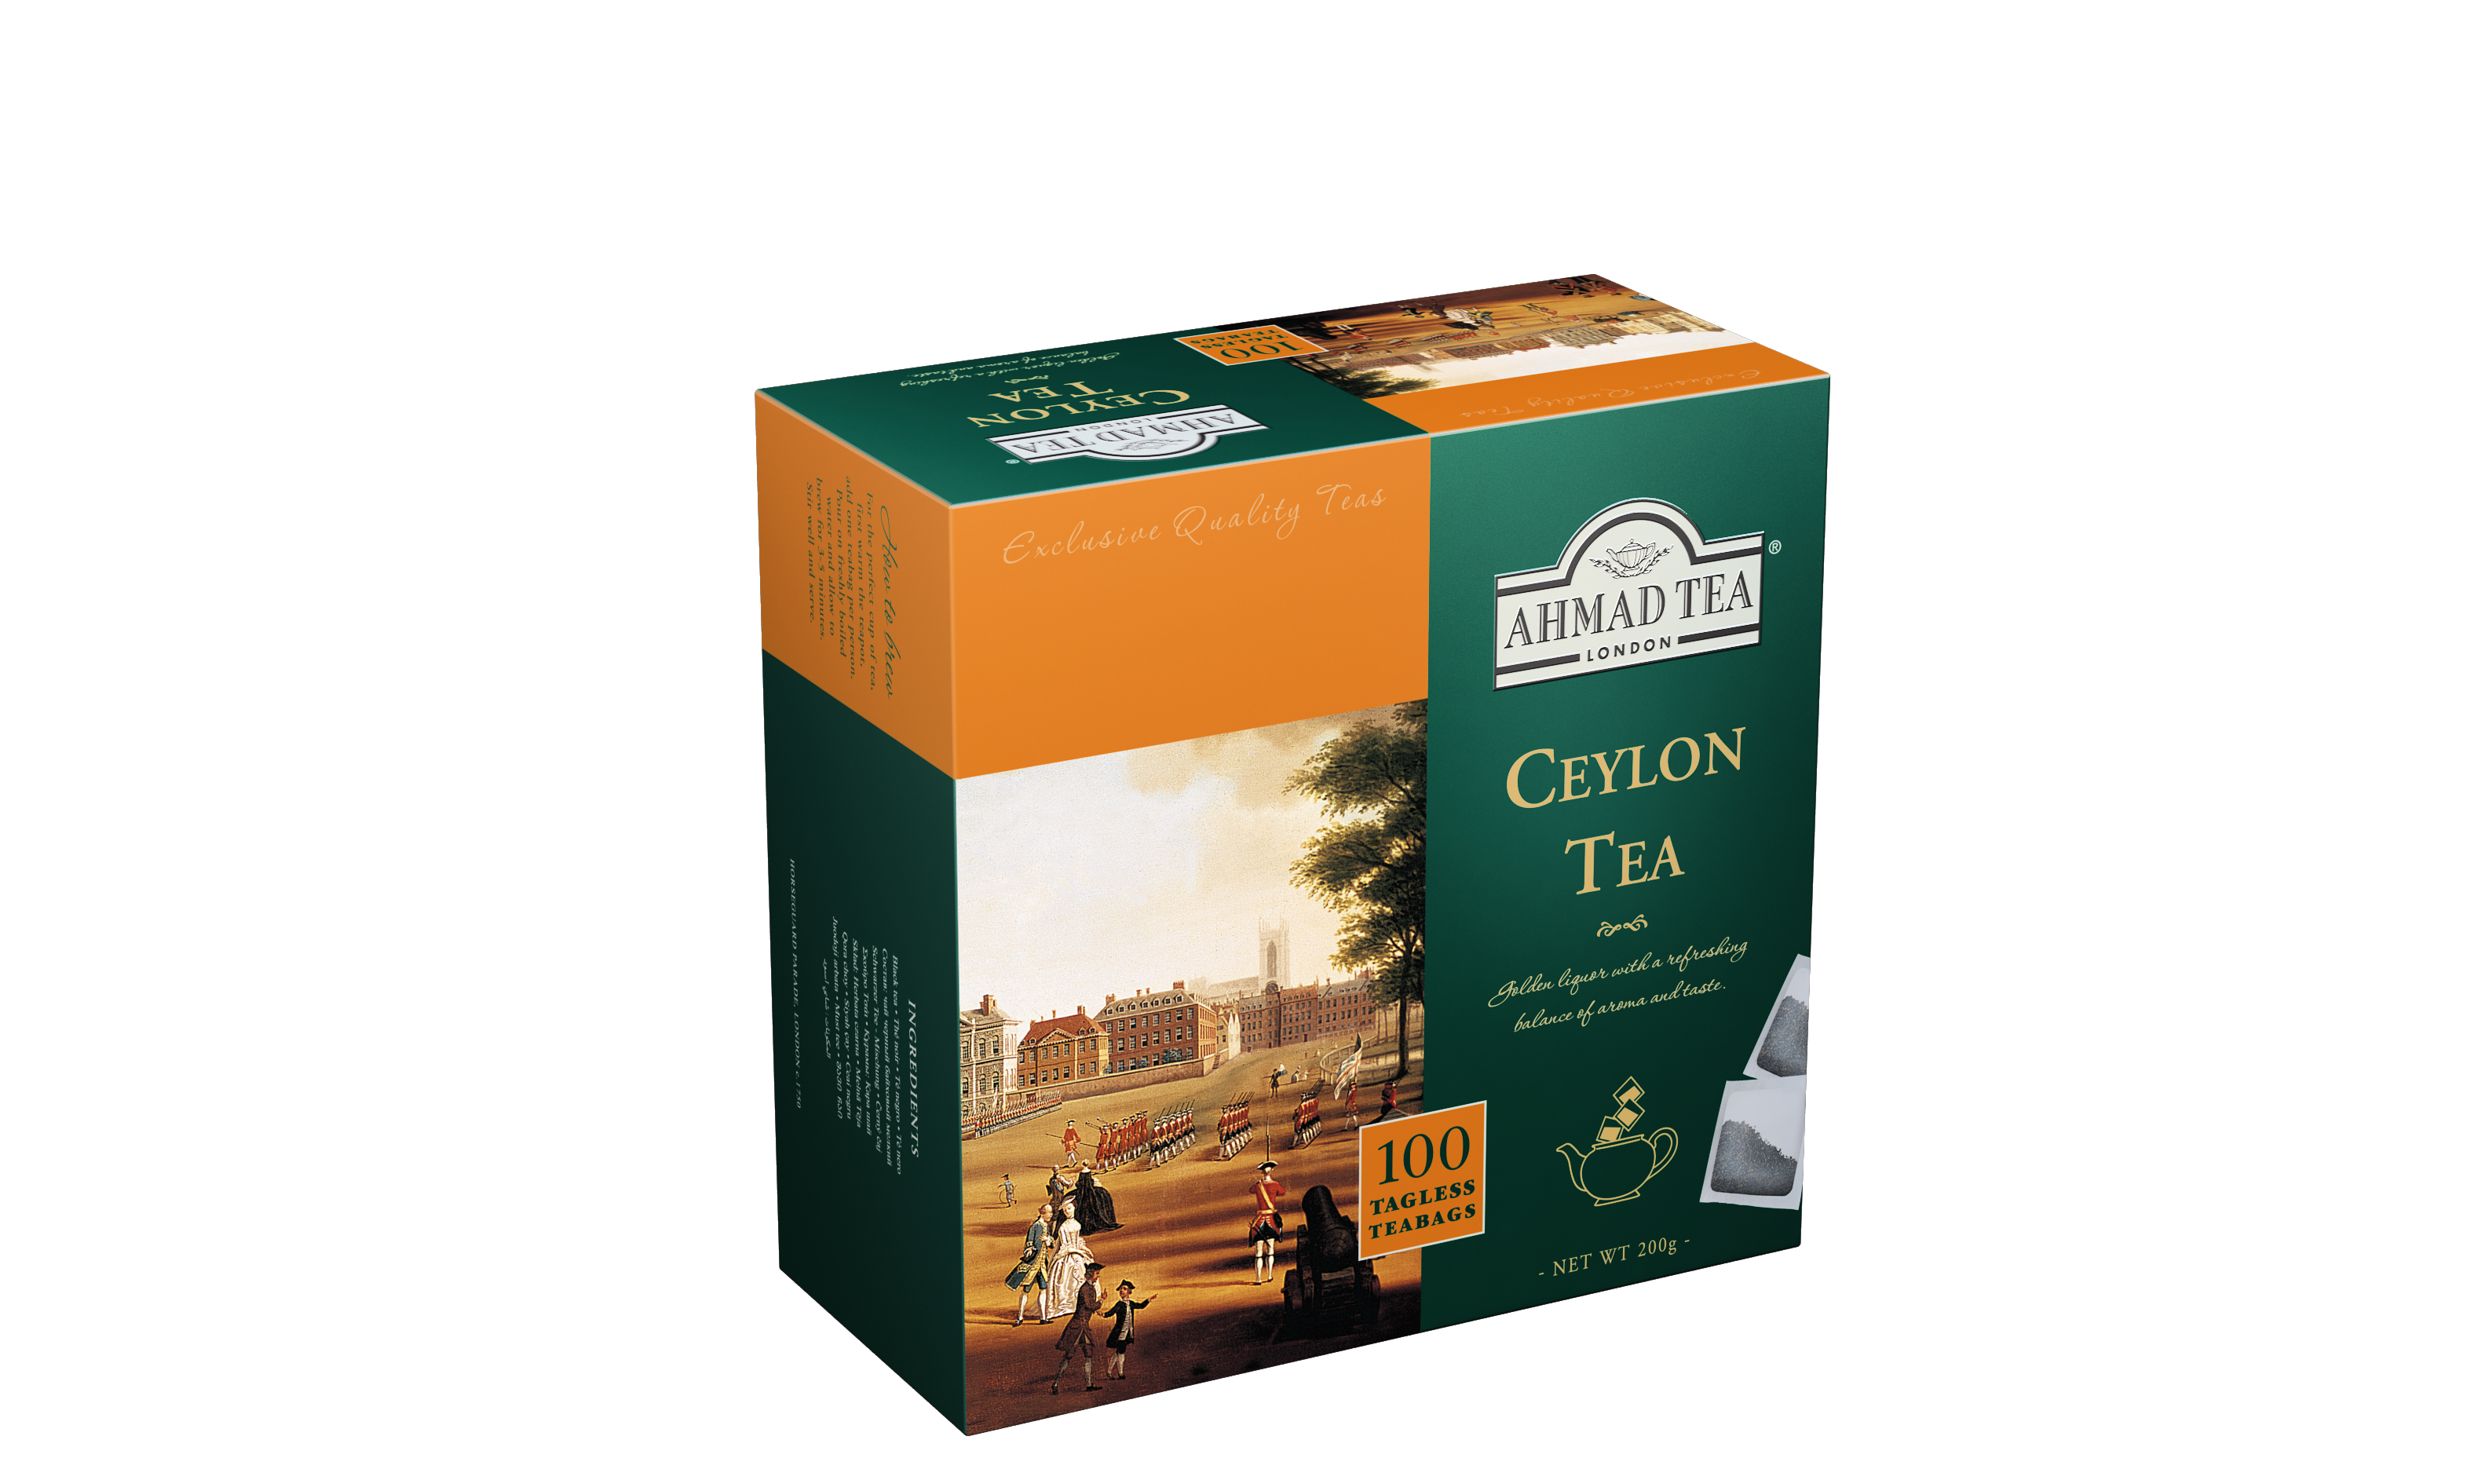 Ahmad Tea Ceylon Tea Herbata Expresowa 100 saszetek 200 g